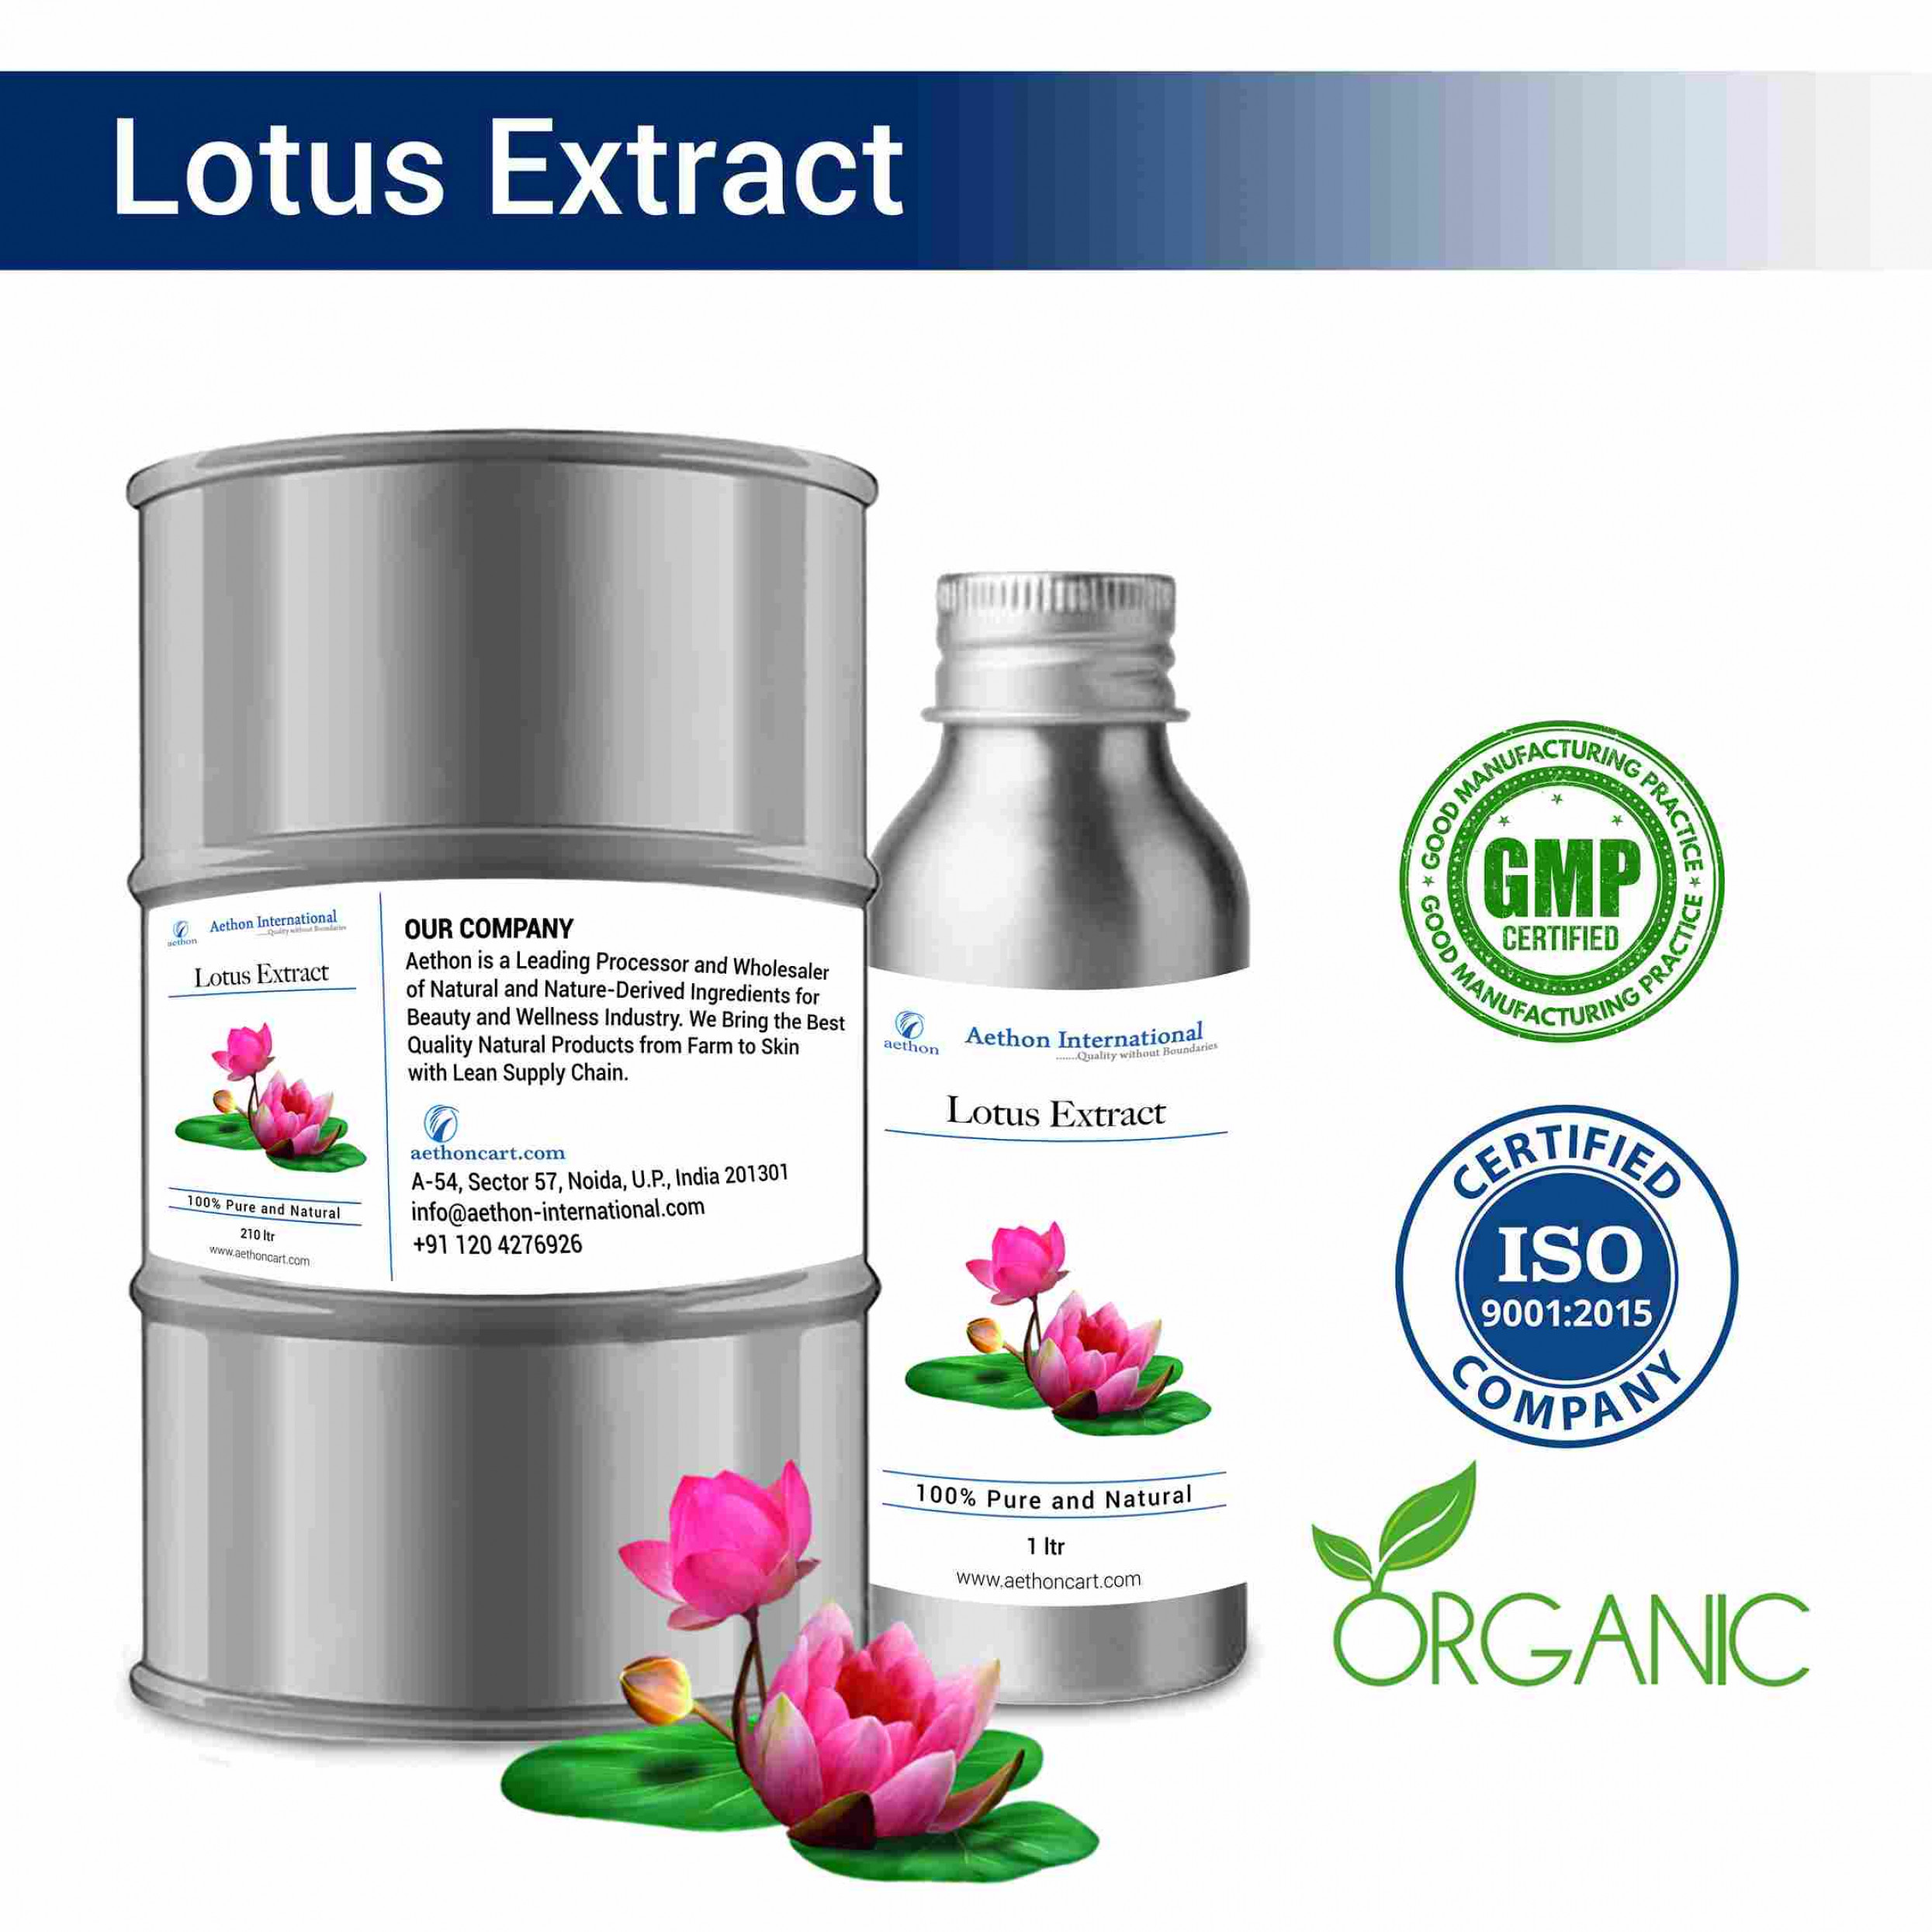 Lotus Extract